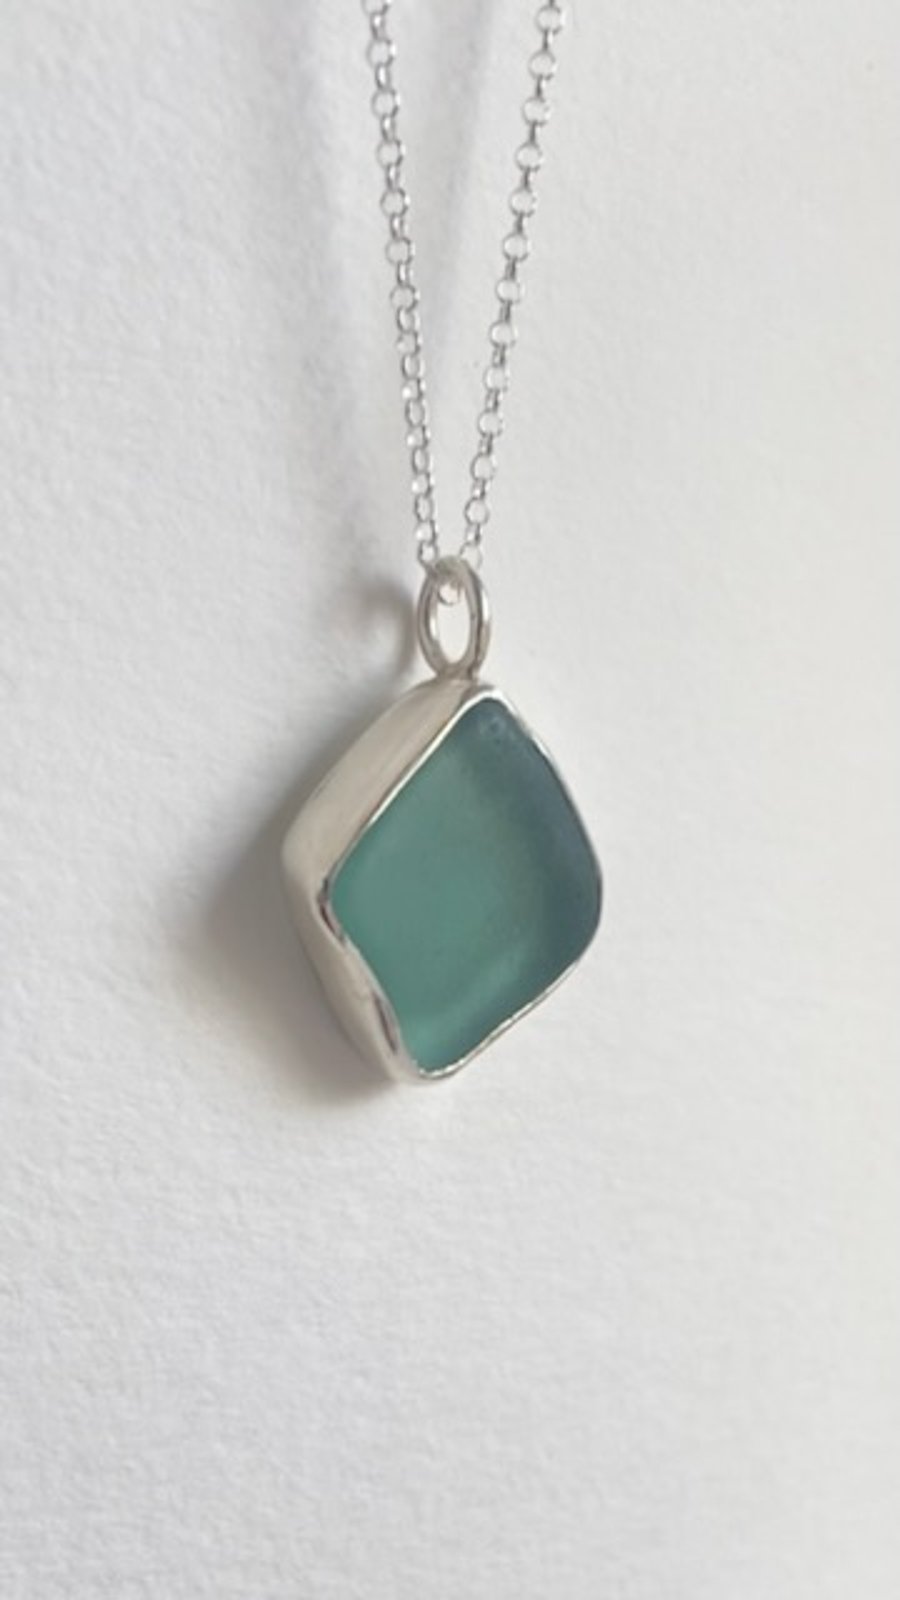 Seafoam, light blue colour sea glass necklace 